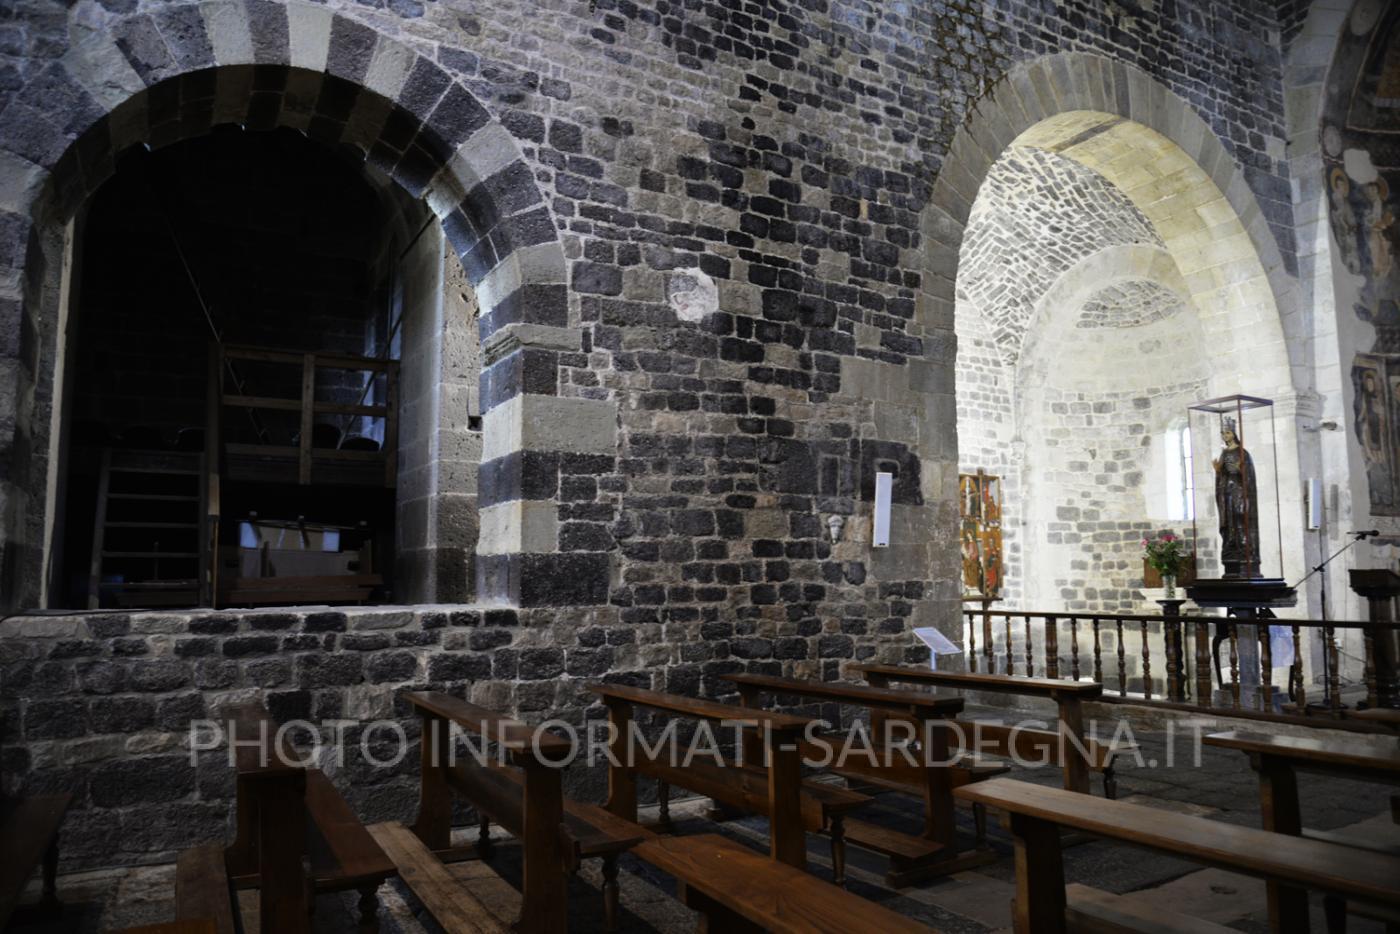 Lato della navata e a destra l'ingresso al transetto triabsidato.